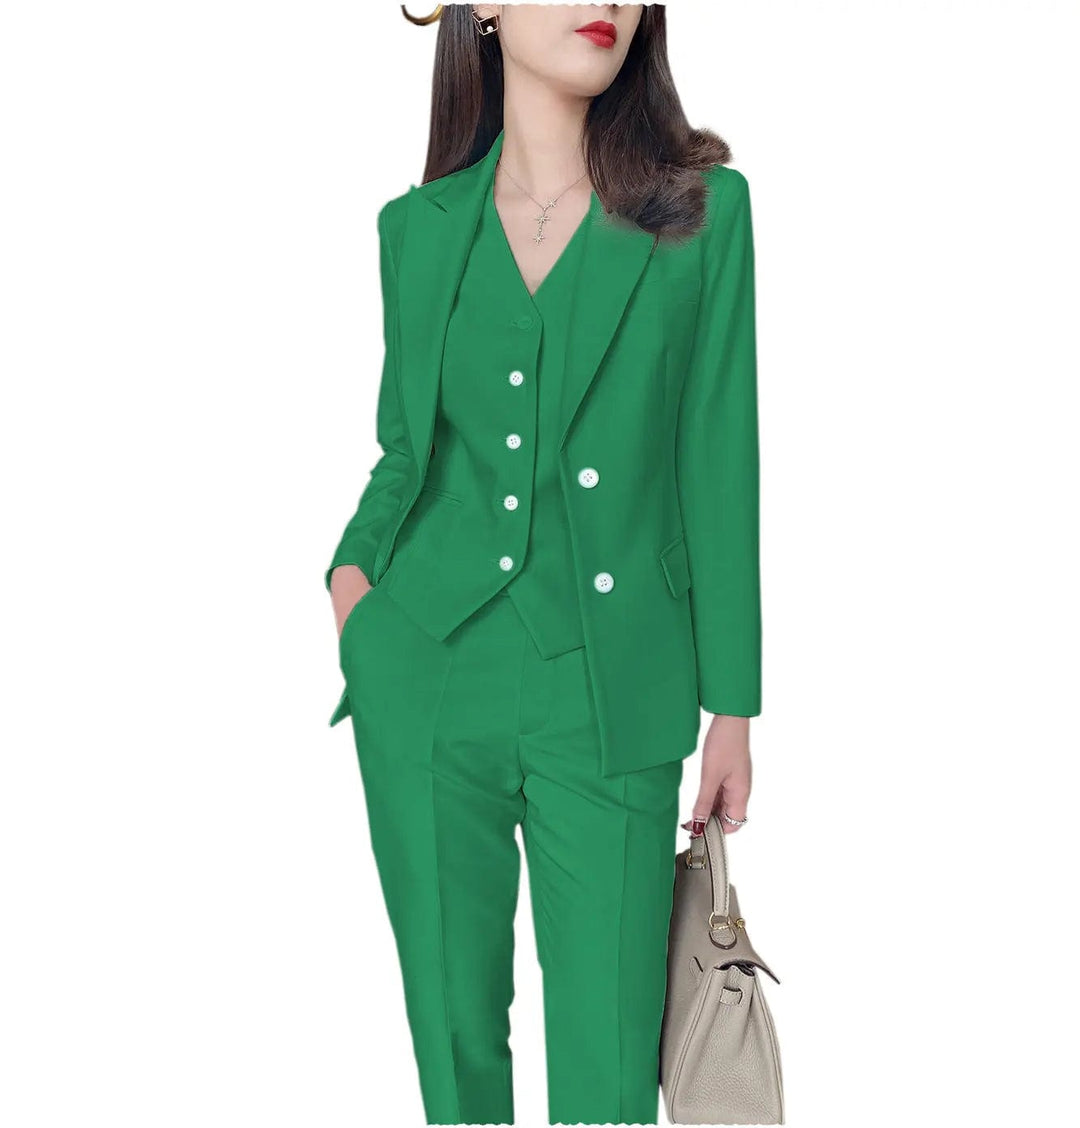 solovedress Fashion Slim Fit 3 Pieces Women Suit Peak Lapel Blazer